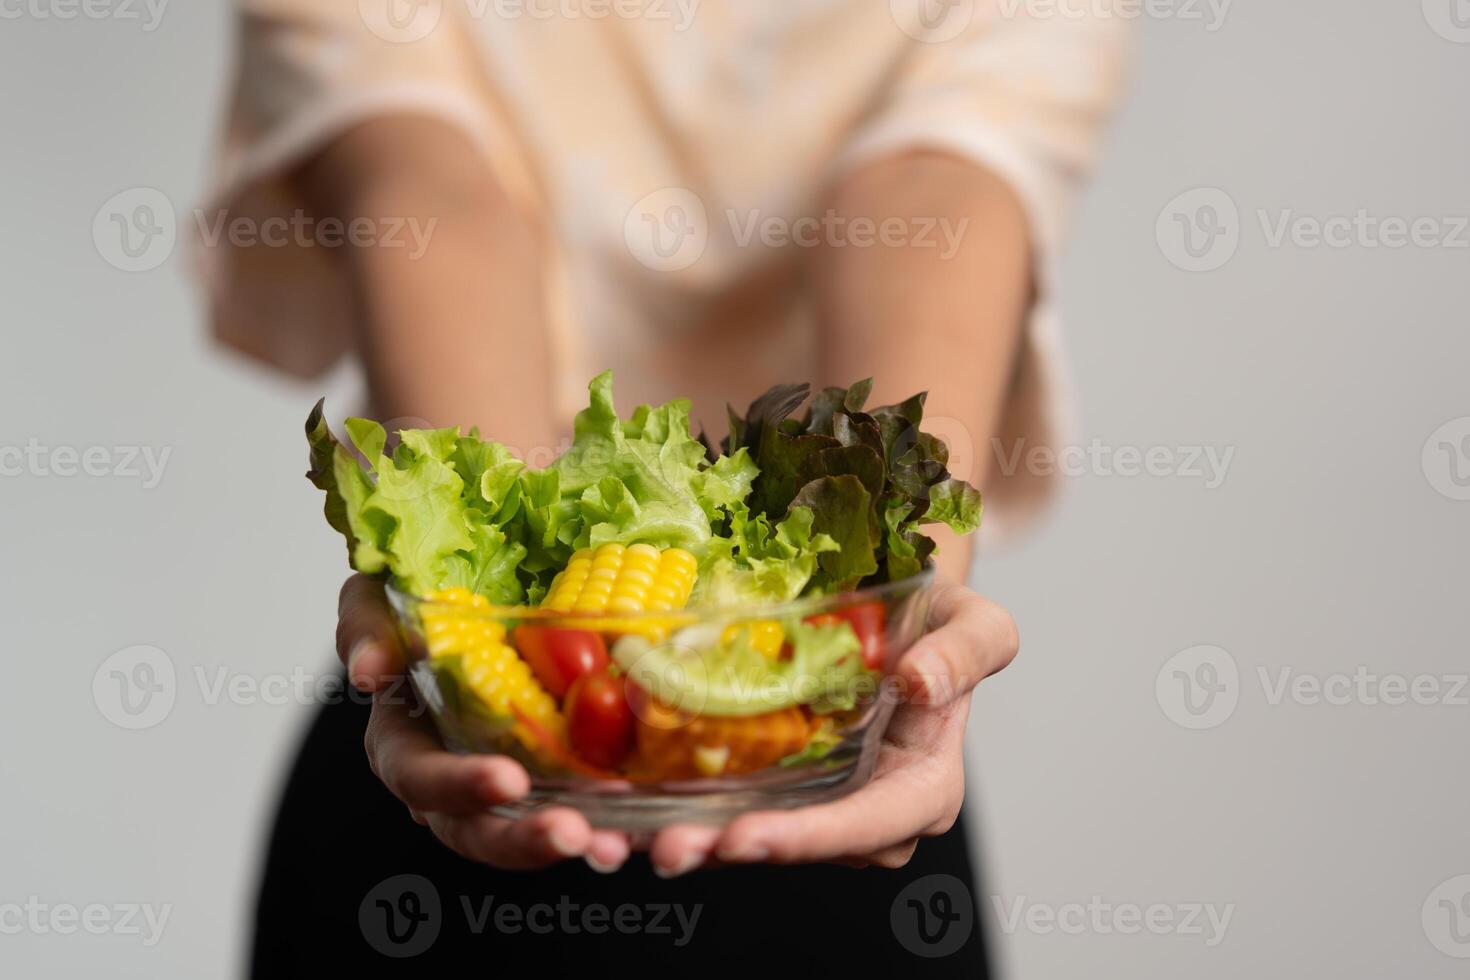 porträtt av en Lycklig lekfull asiatisk flicka äter färsk sallad från en glas skål efter träna på Hem. ung lady njuter friska näring och organisk mat, har vegetarian måltid foto